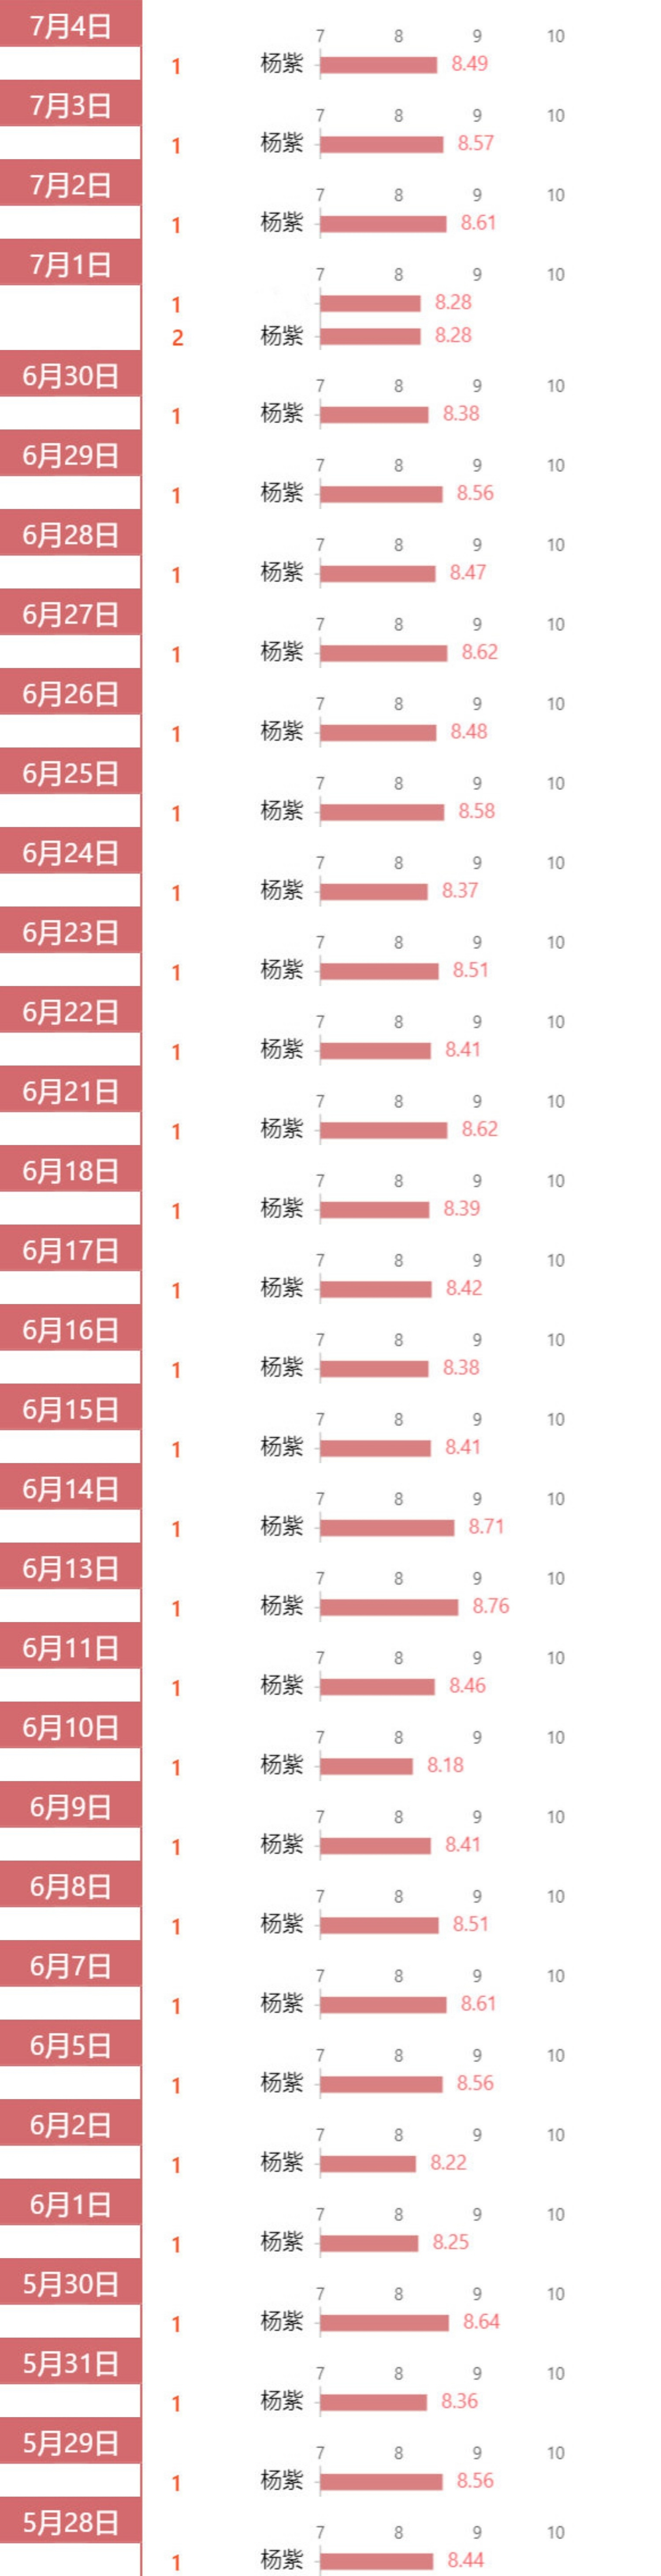 杨紫蝉联数据与品牌榜单top1 霸榜登顶成绩亮眼 全网搜